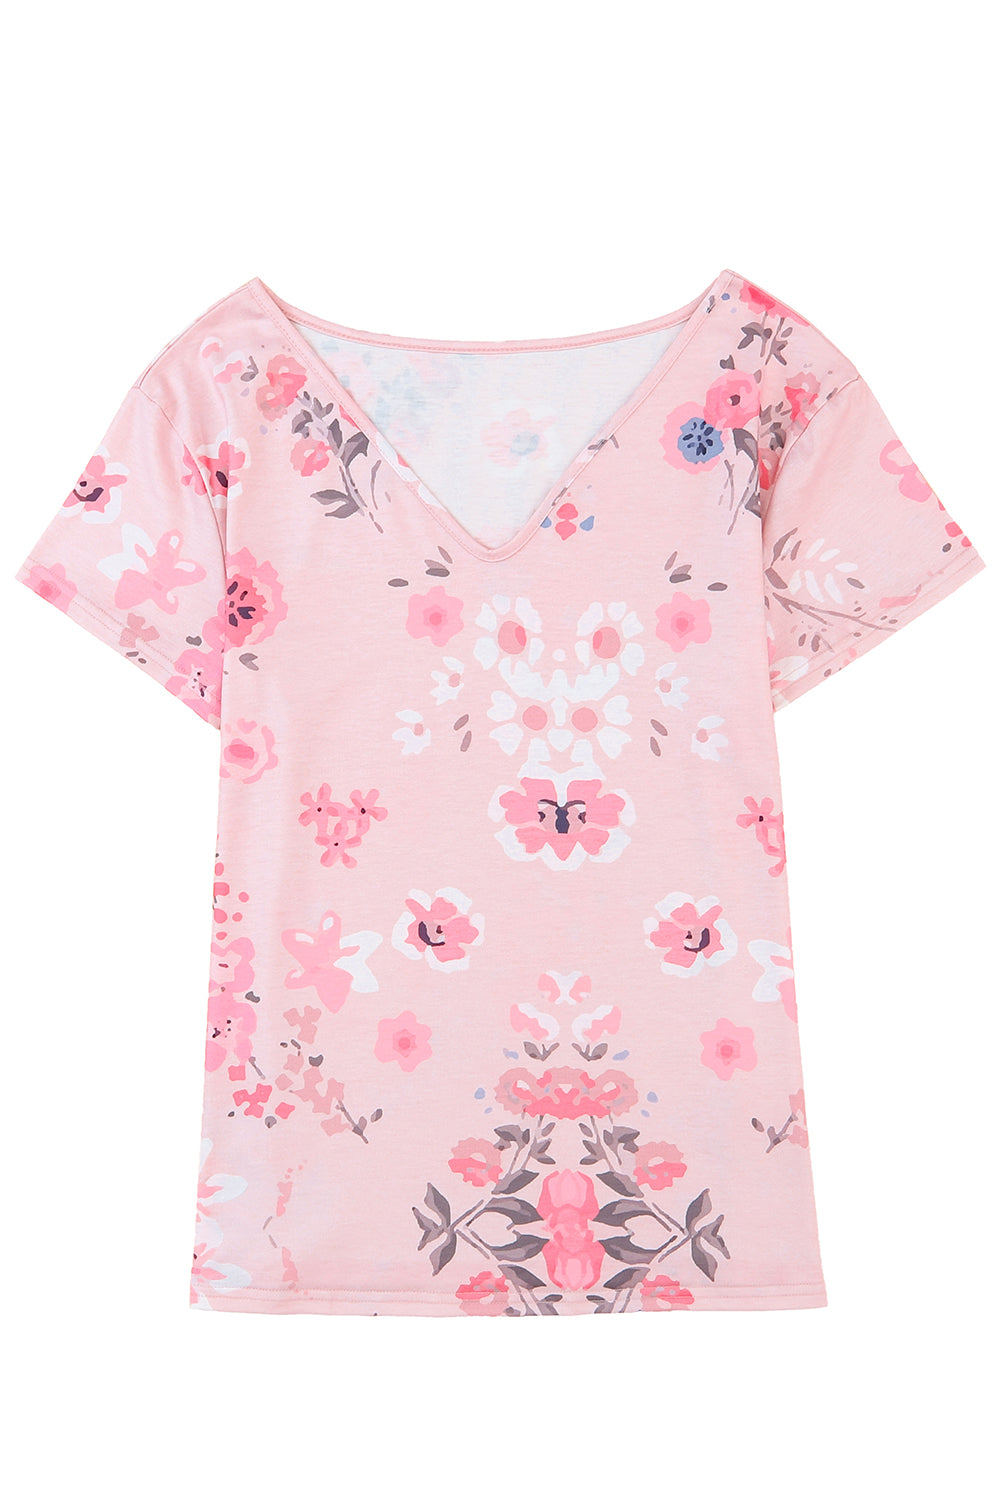 T-shirt rosa con stampa floreale con scollo a V